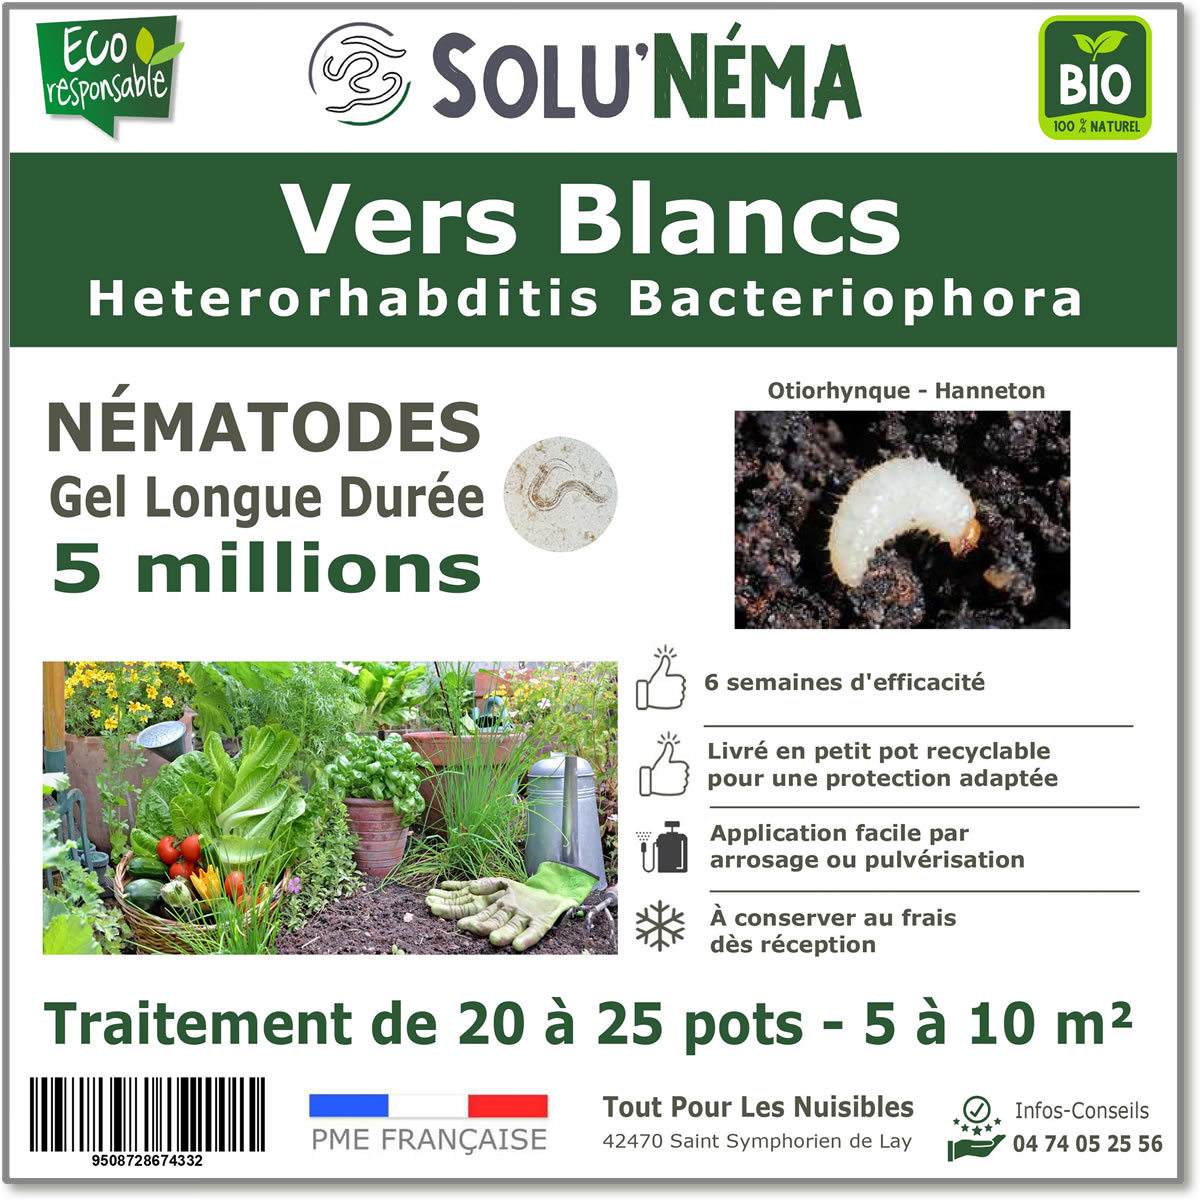 Nématodes (HB) Solunema pour Les vers blancx - otiorhinque - hanneton 3 millions SF